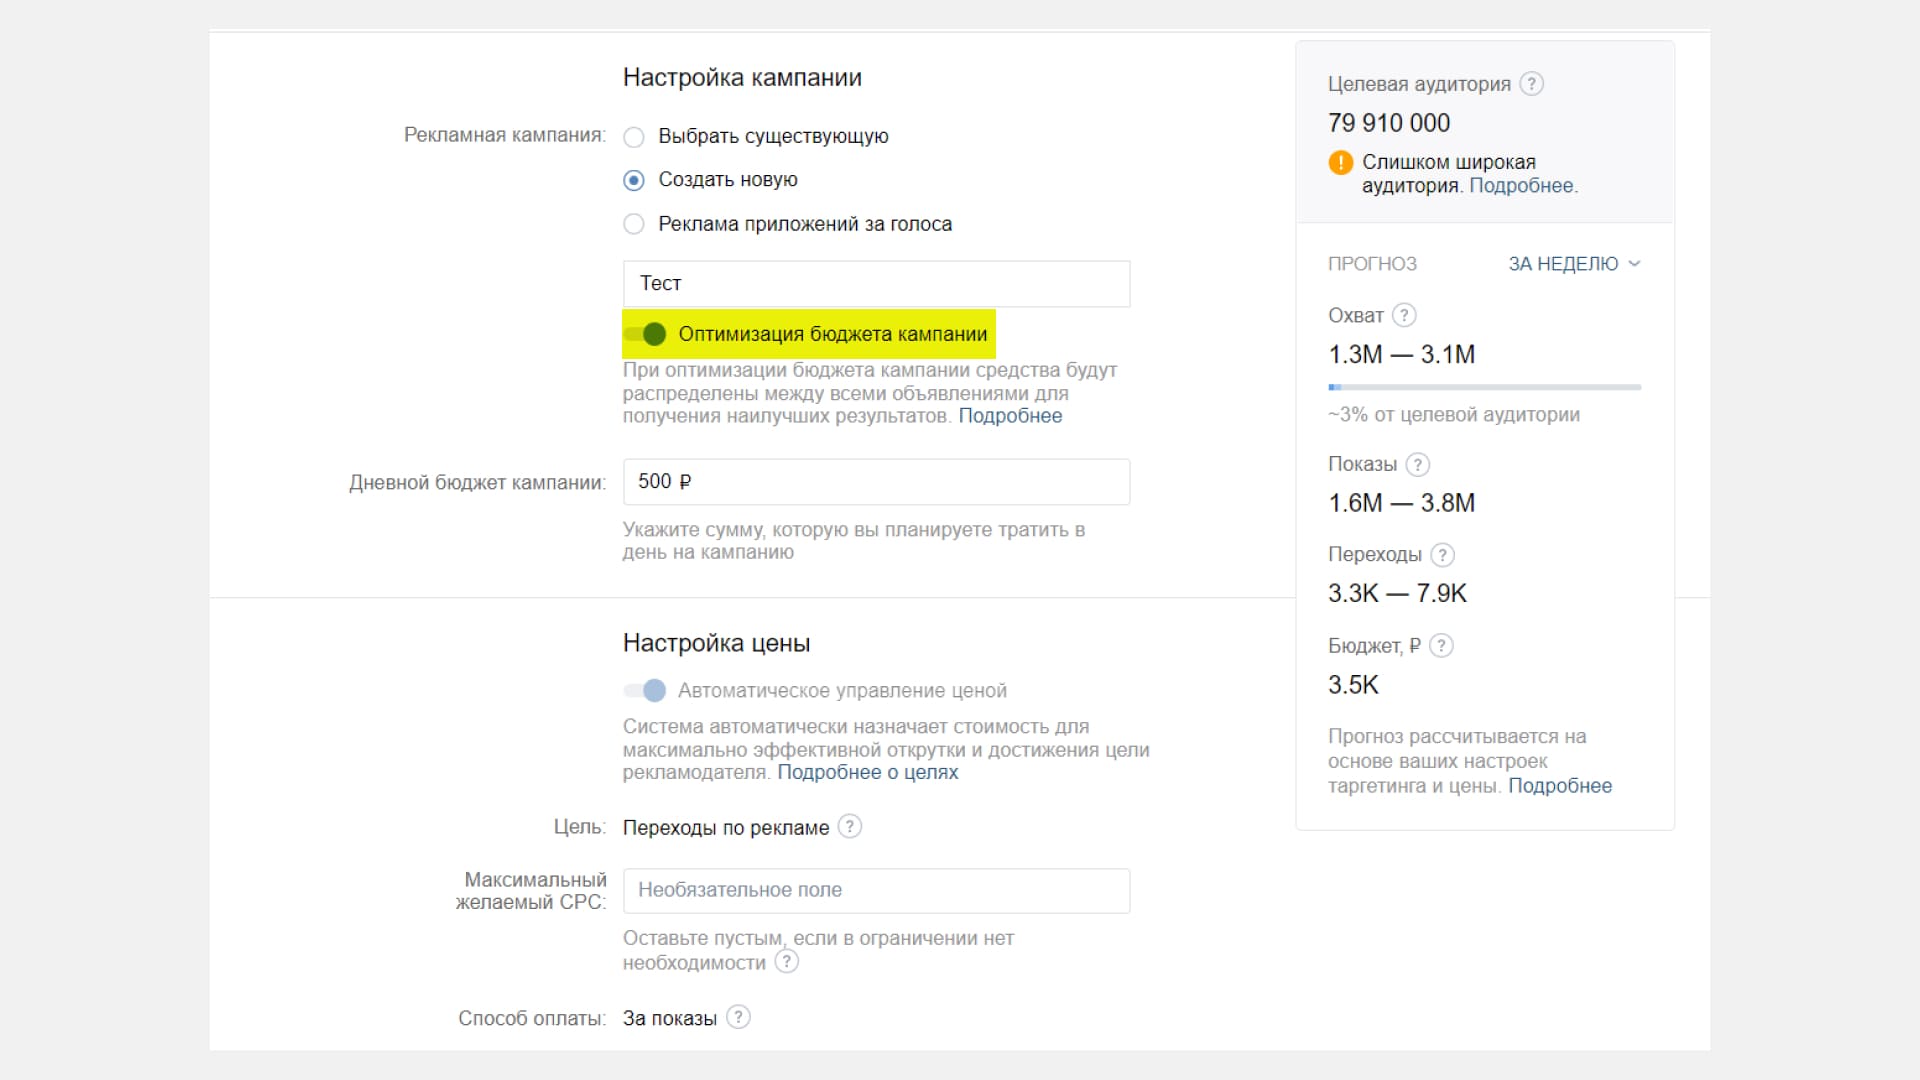 Настройка рекламных кампаний ВКонтакте стала более гибкой